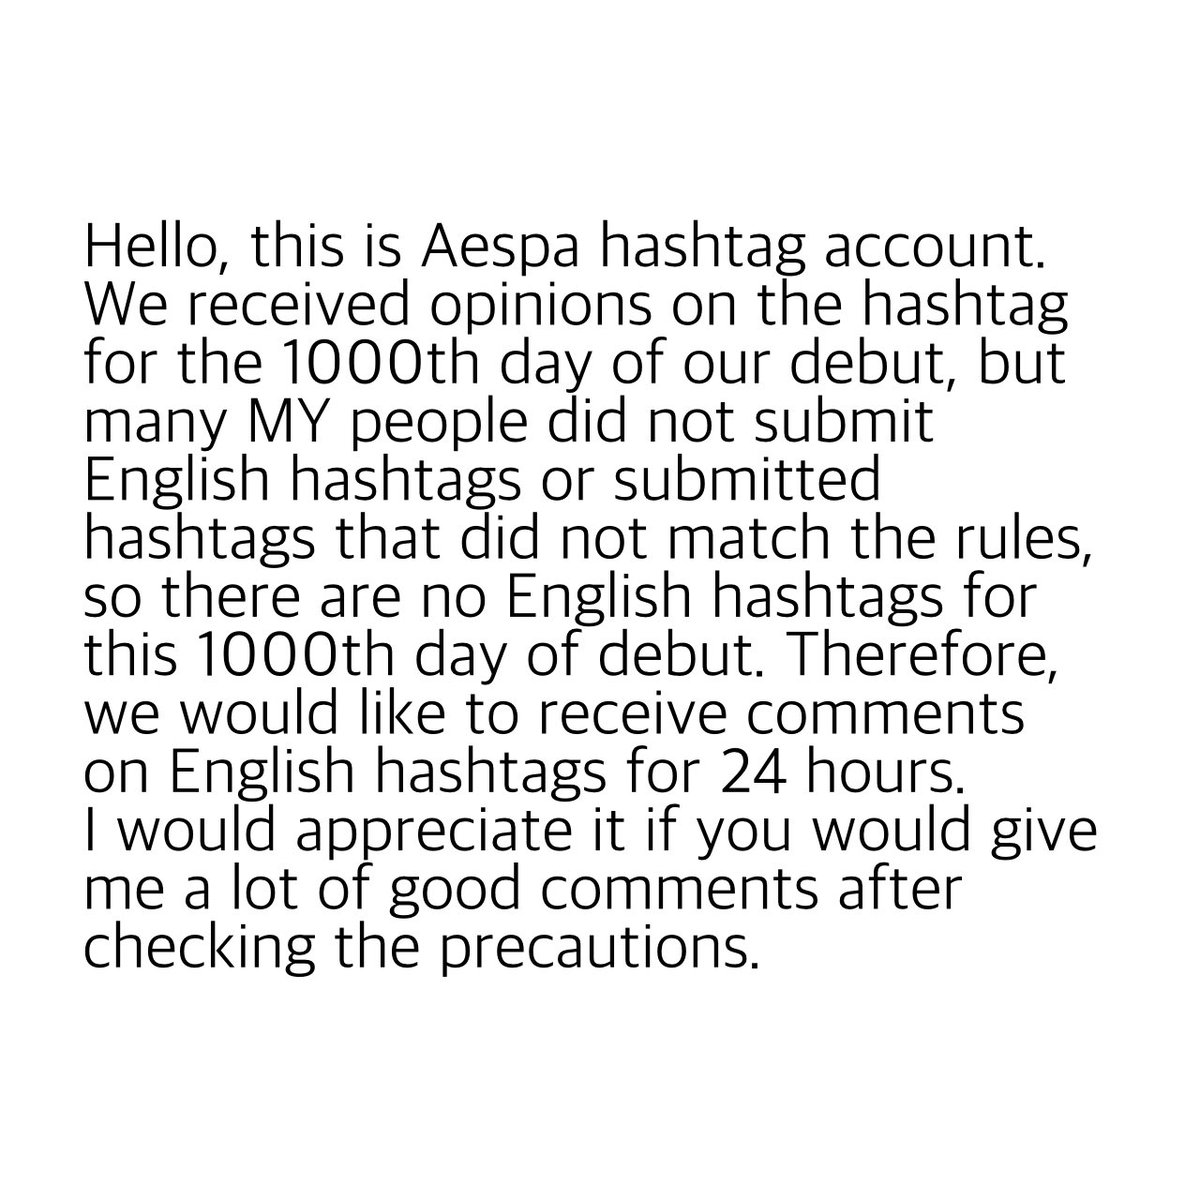 안녕하세요, 에스파 해시태그 계정입니다. Hello, this is Aespa hashtag account.